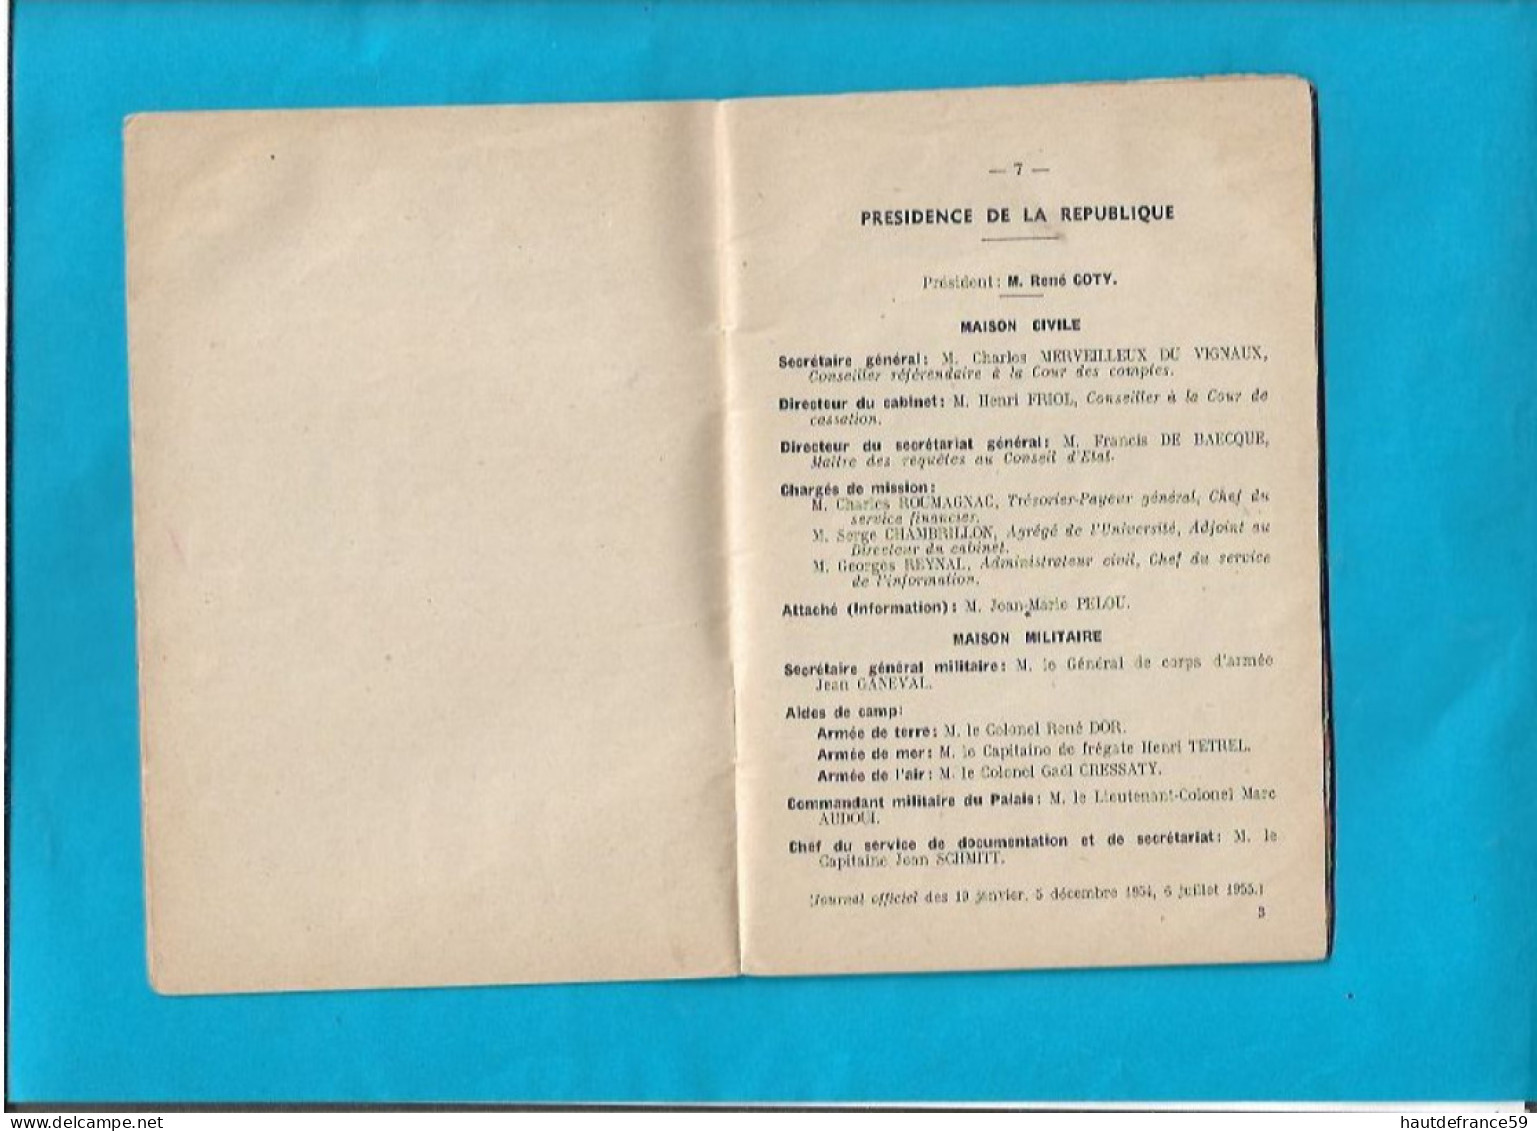 RARE Secretariat Général Du Gouvernement 1956 Ministère GUY MOLLET Composition Avec Cabinets Ministériel 47 Pages - Uniformen